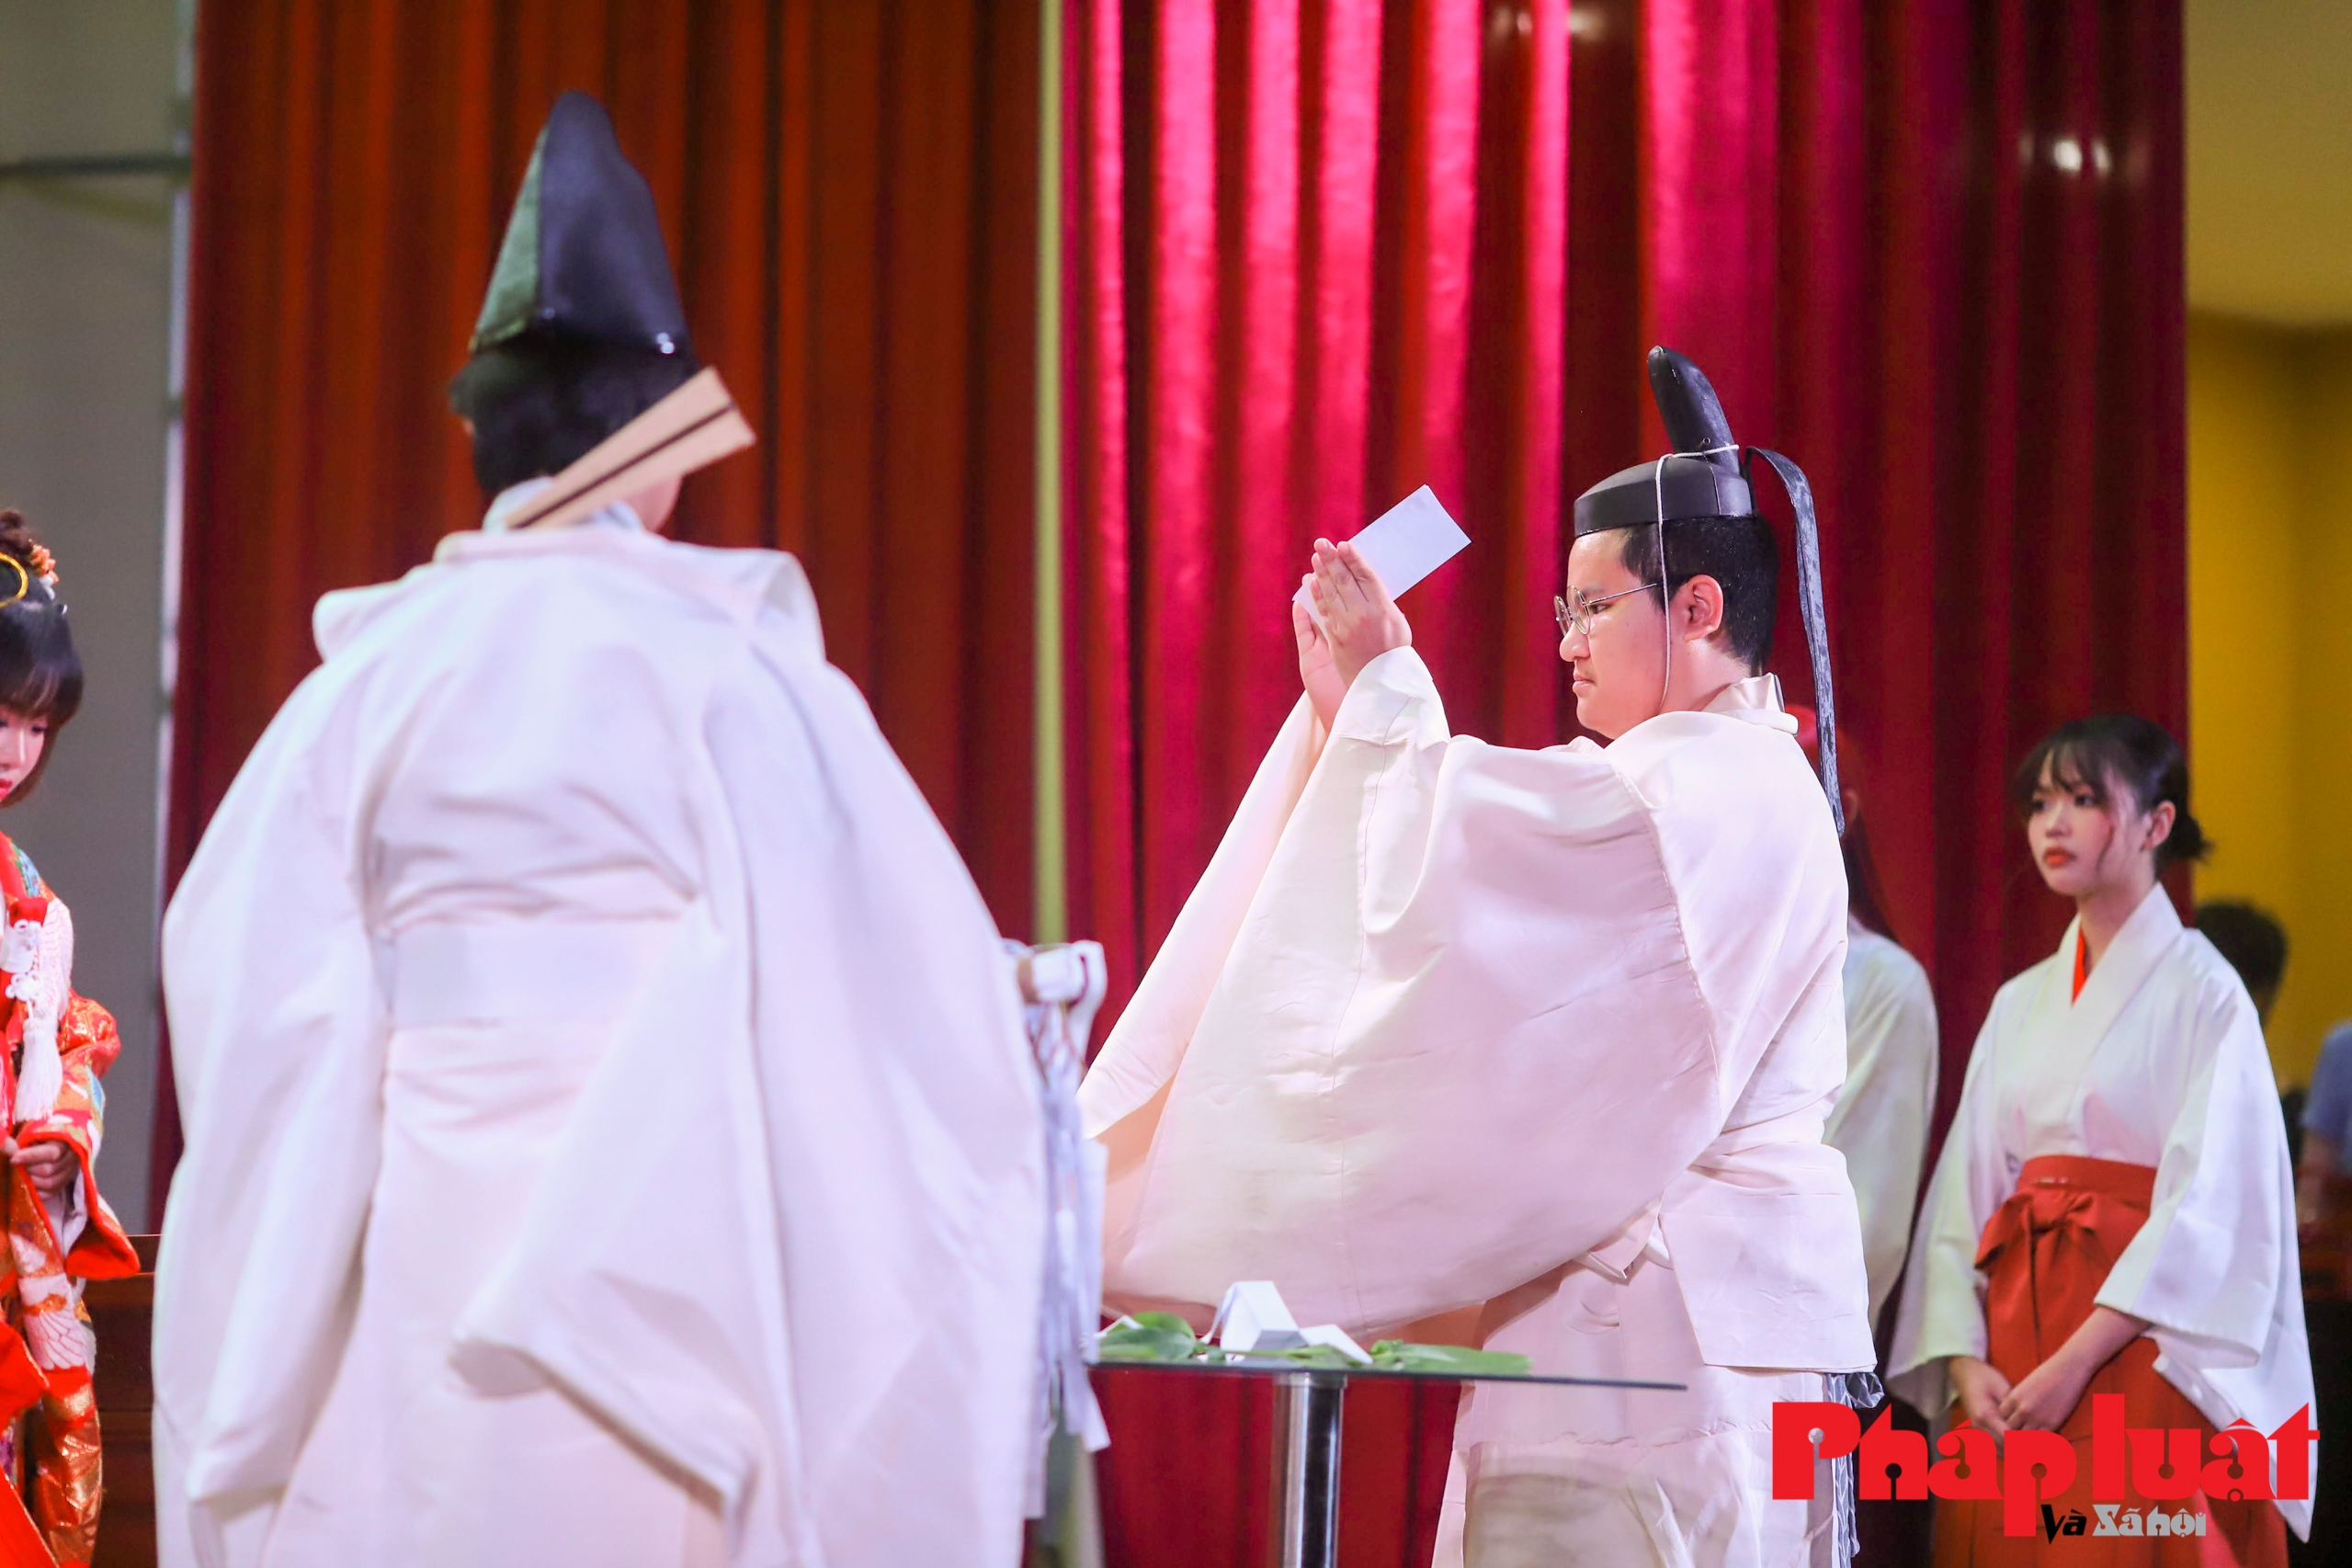 Lần đầu phỏng dựng đám cưới của người Nhật Bản theo nghi lễ Thần Đạo tại Việt Nam